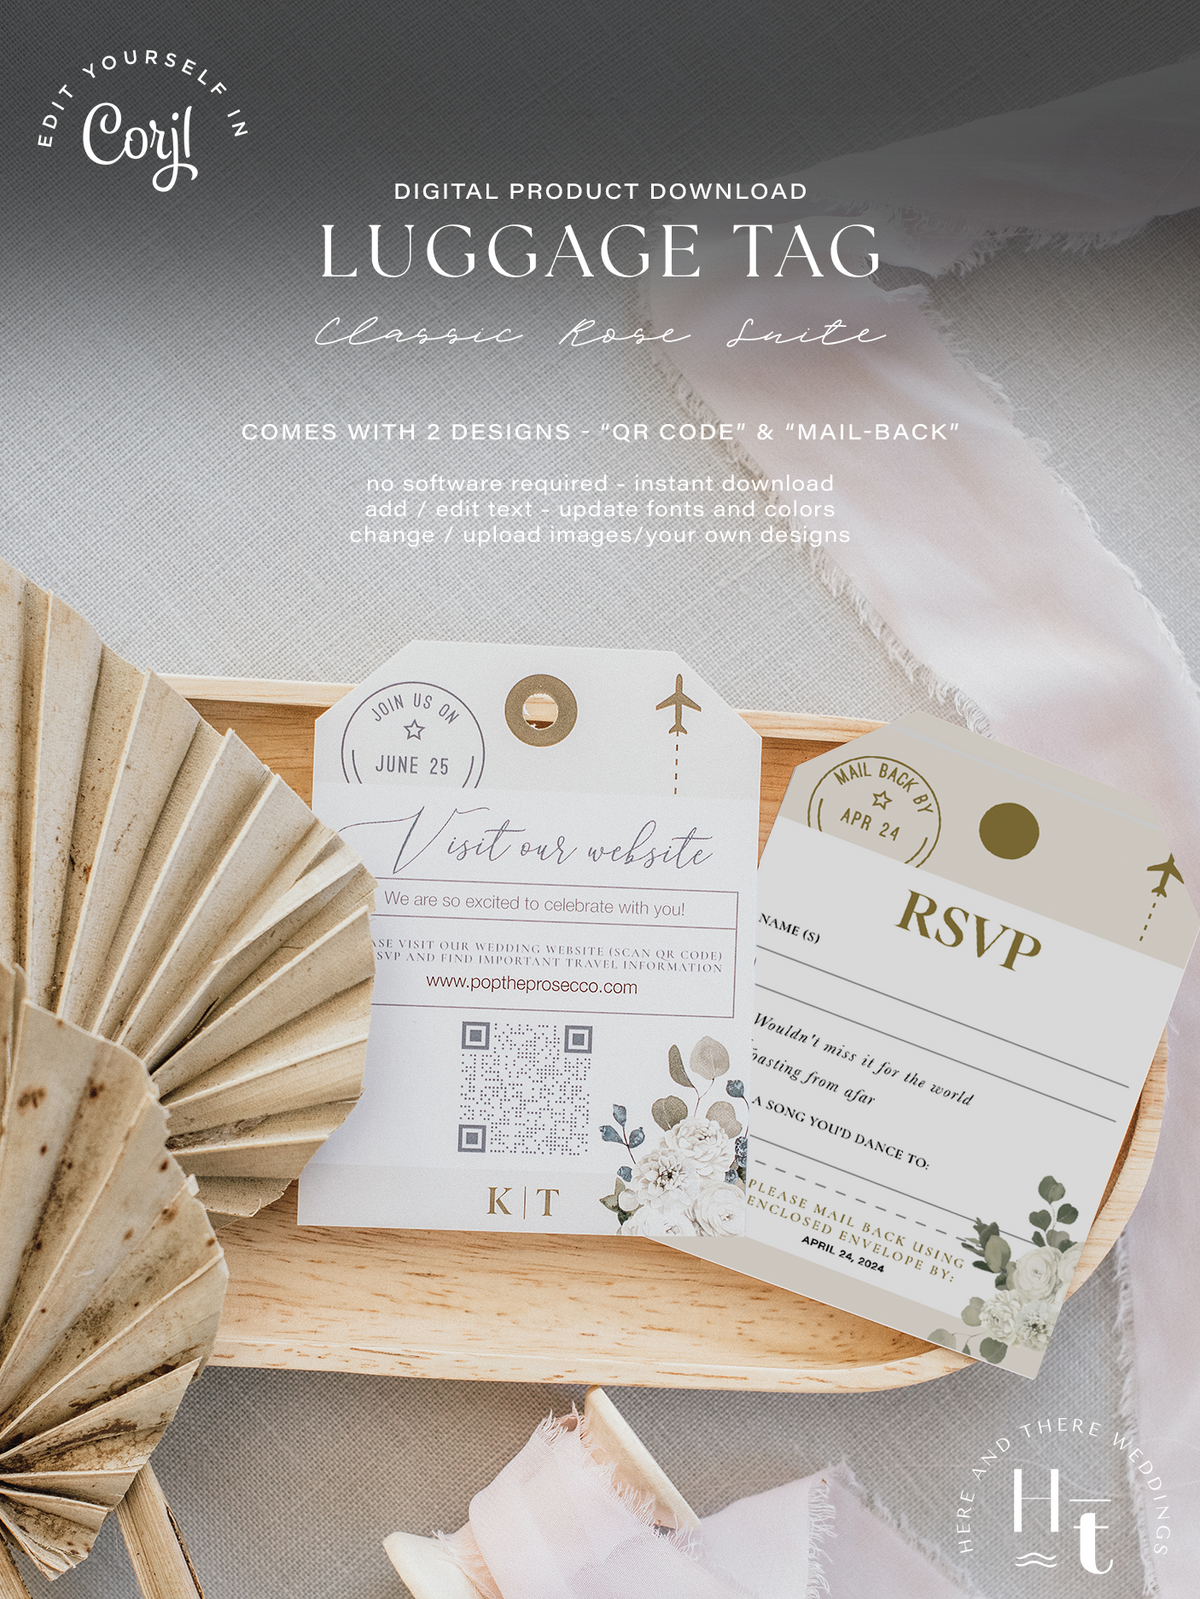 [Digital Product] Classic White Rose | Passport Wedding Invitation Suite